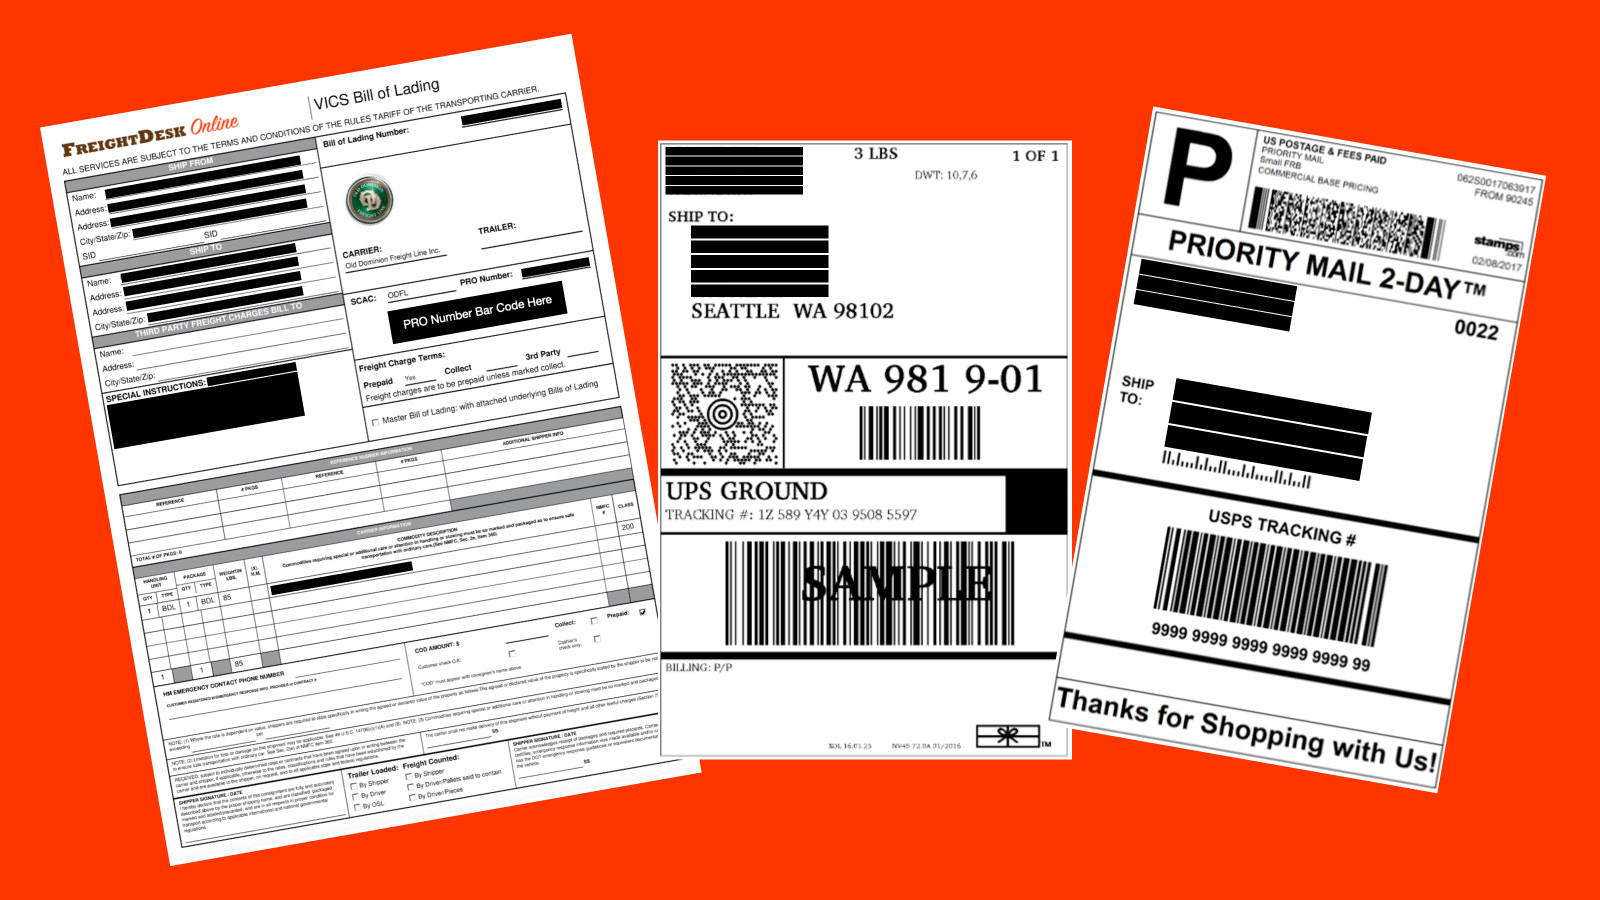 Ejemplos de etiquetas y documentación de envío de FreightDesk Online